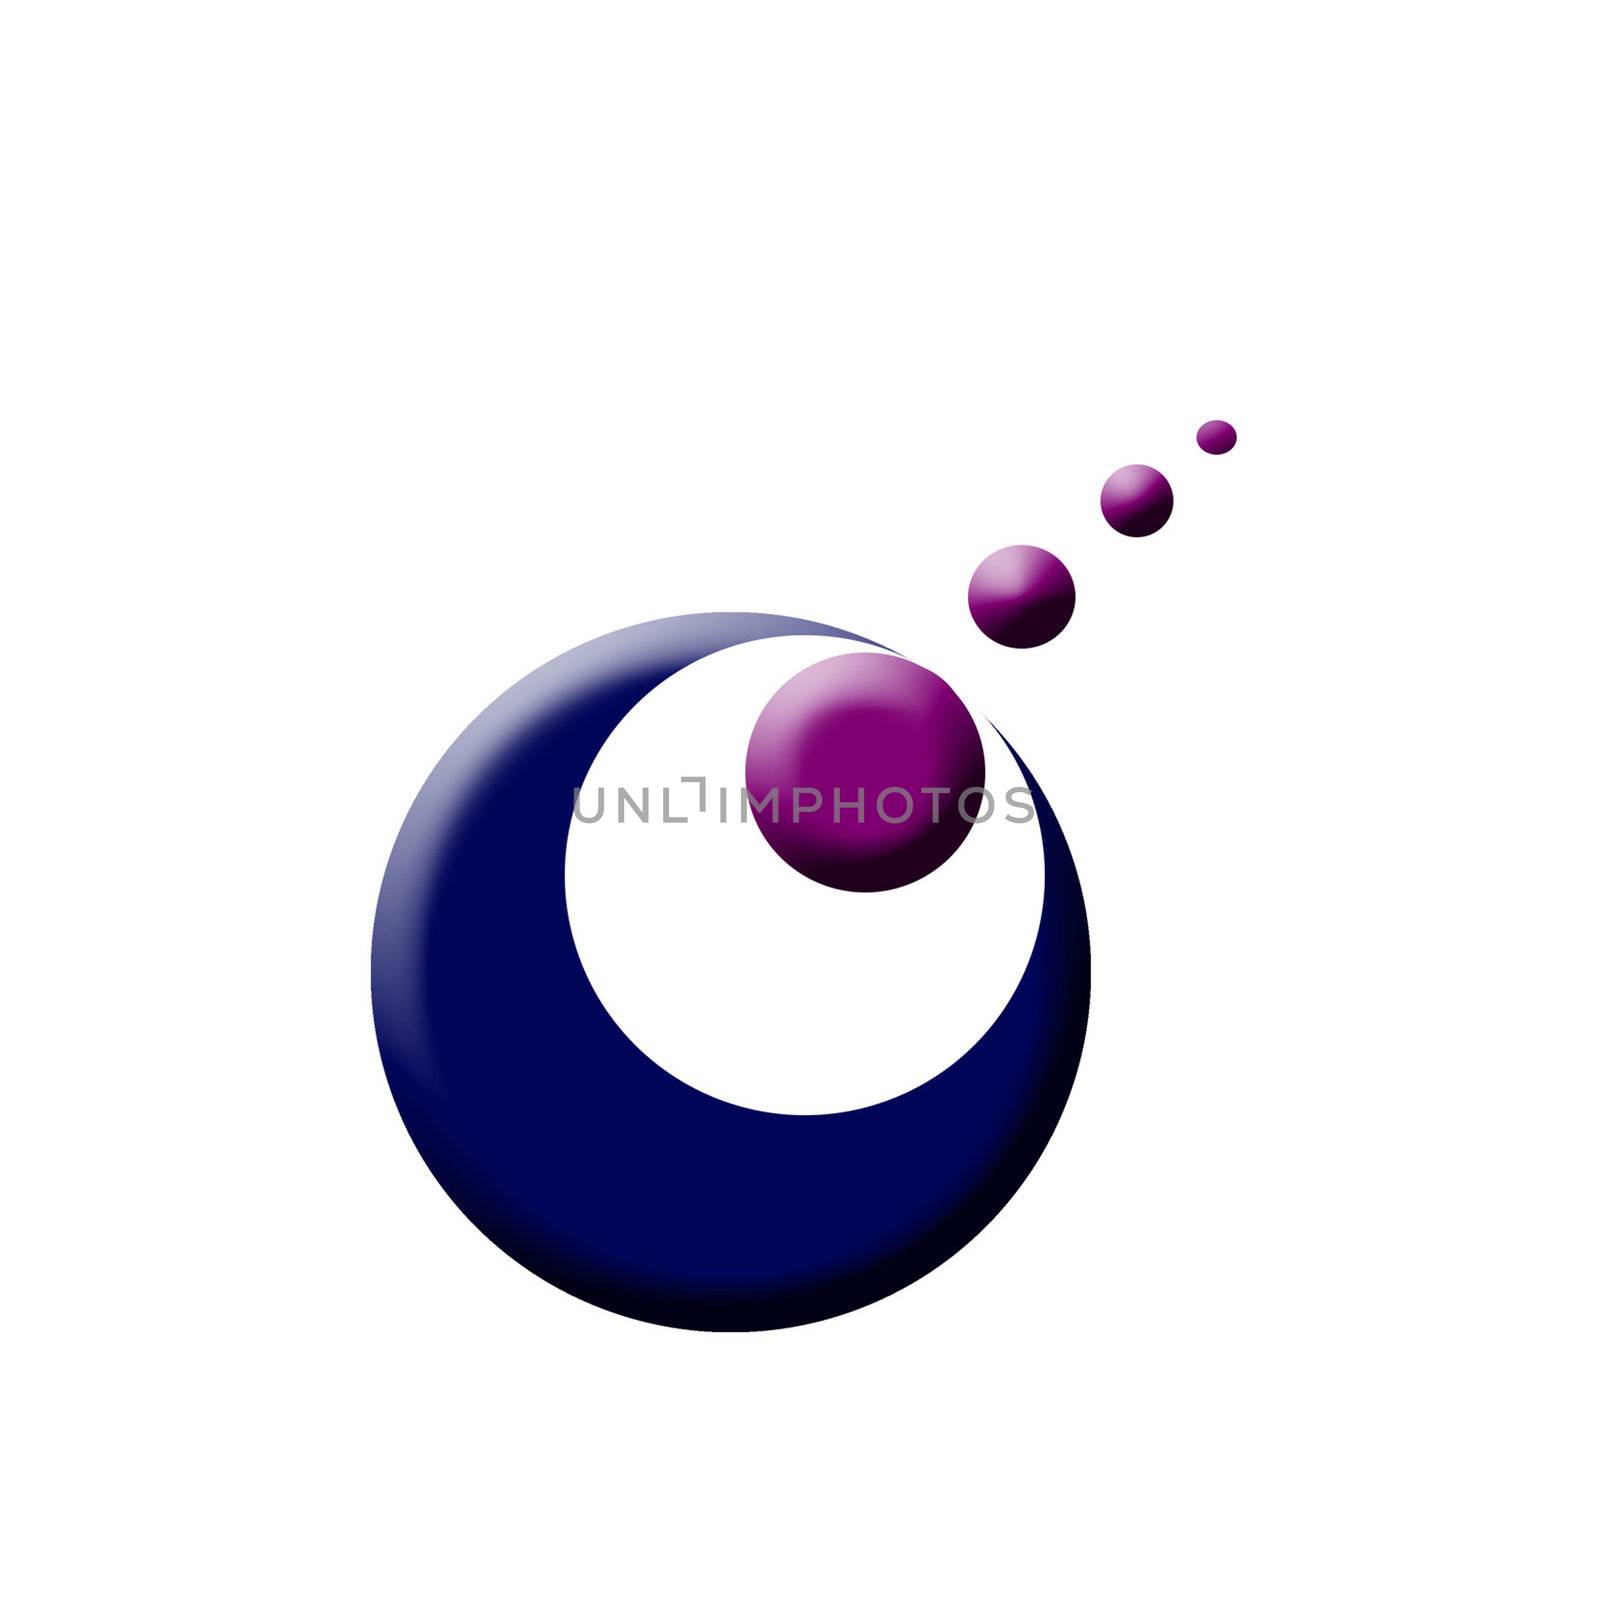 Business logo by shawlinmohd